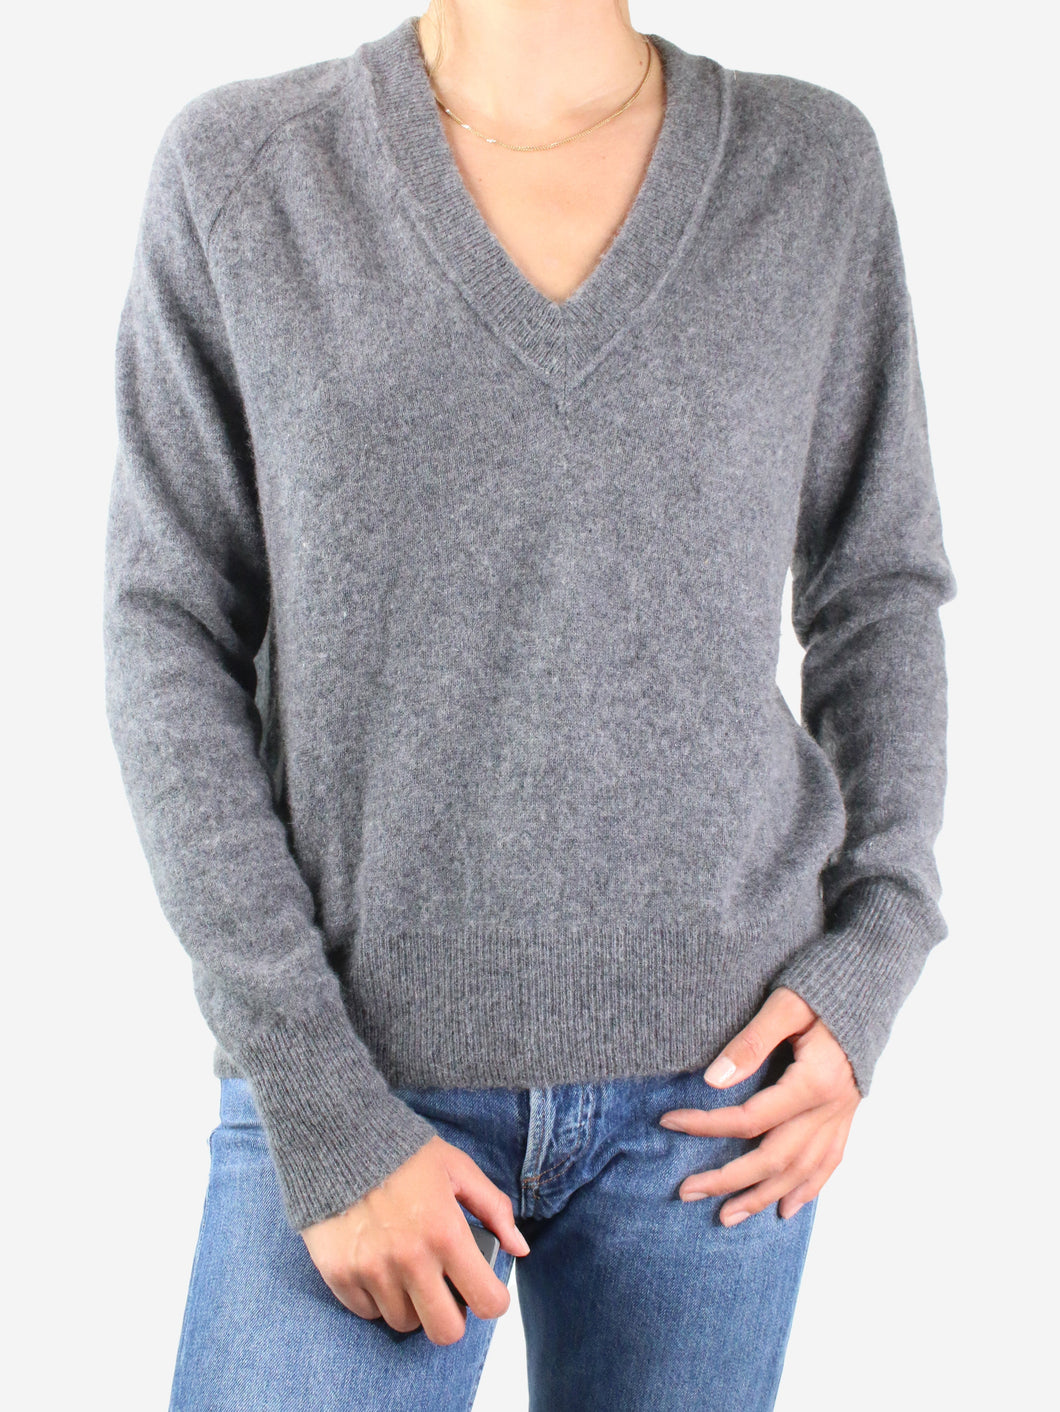 Grey v-neck jumper - size S Knitwear Equipment Femme 